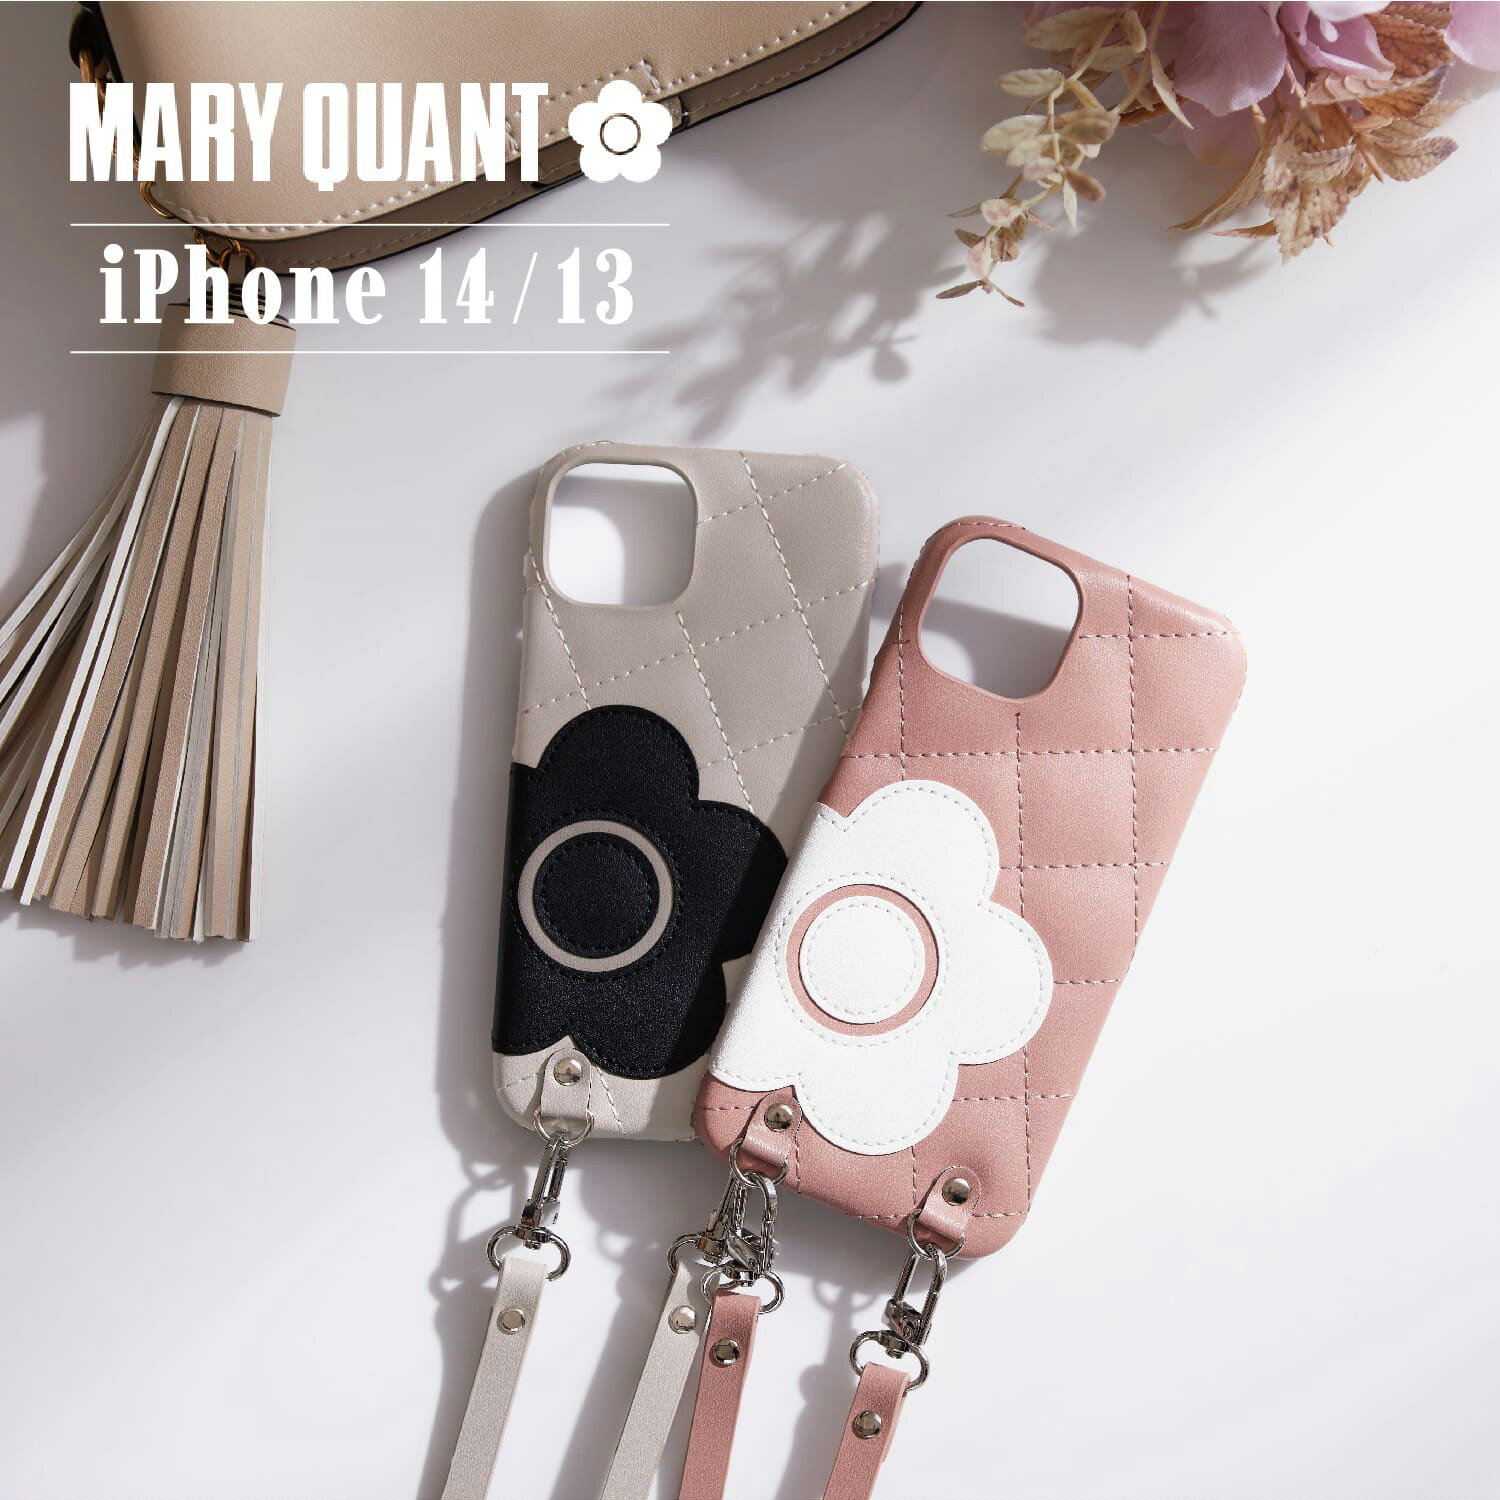 マリークヮント スマホケース レディース MARY QUANT PU QUILT LEATHER NEW SLING CASE マリークヮント iPhone 14 13 ケース スマホケース 携帯 レディース ブラック ホワイト グレー ブラウン ピンク 黒 白 母の日